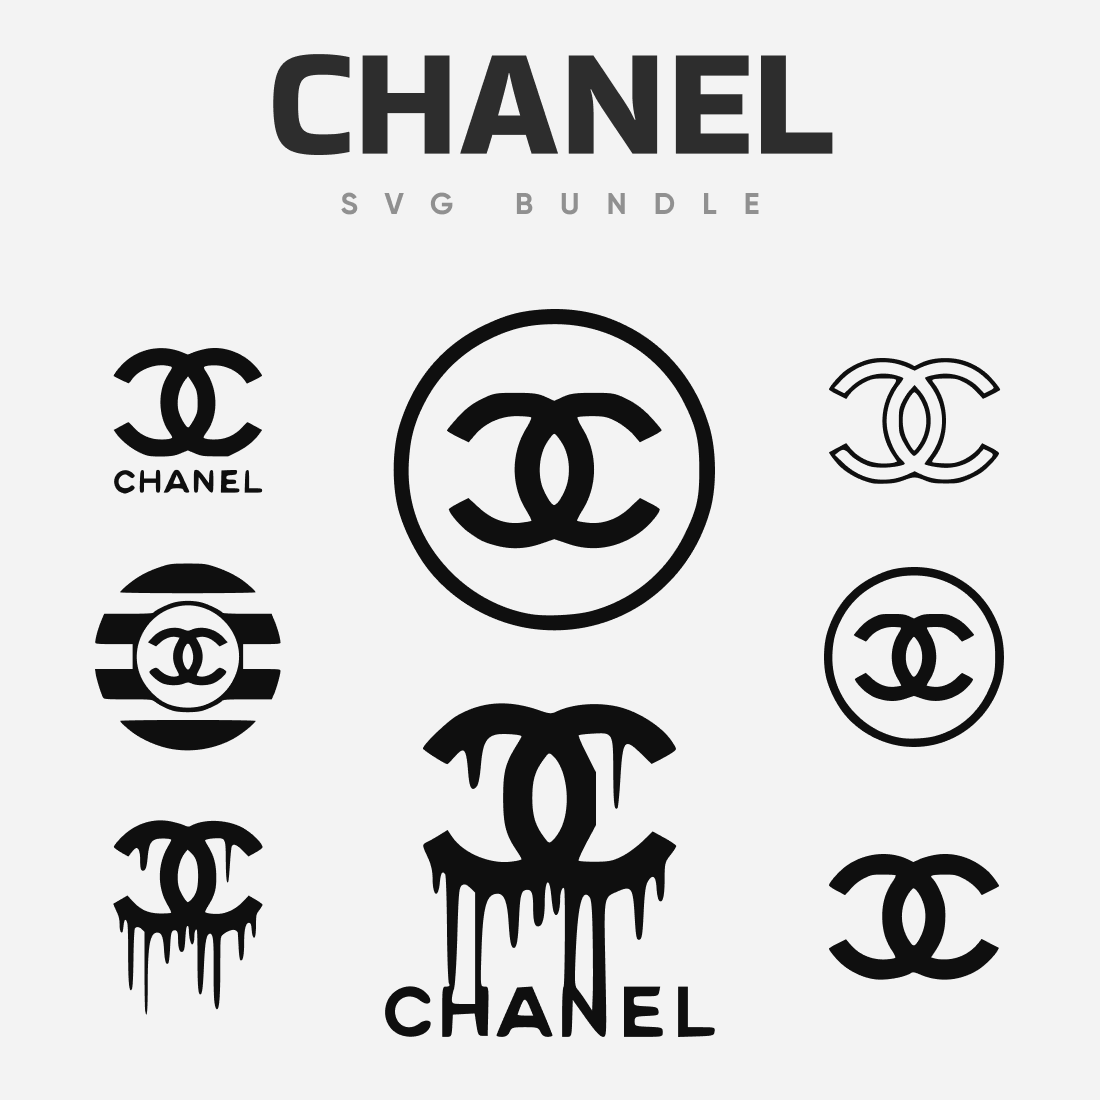 Chanel svg bundle â